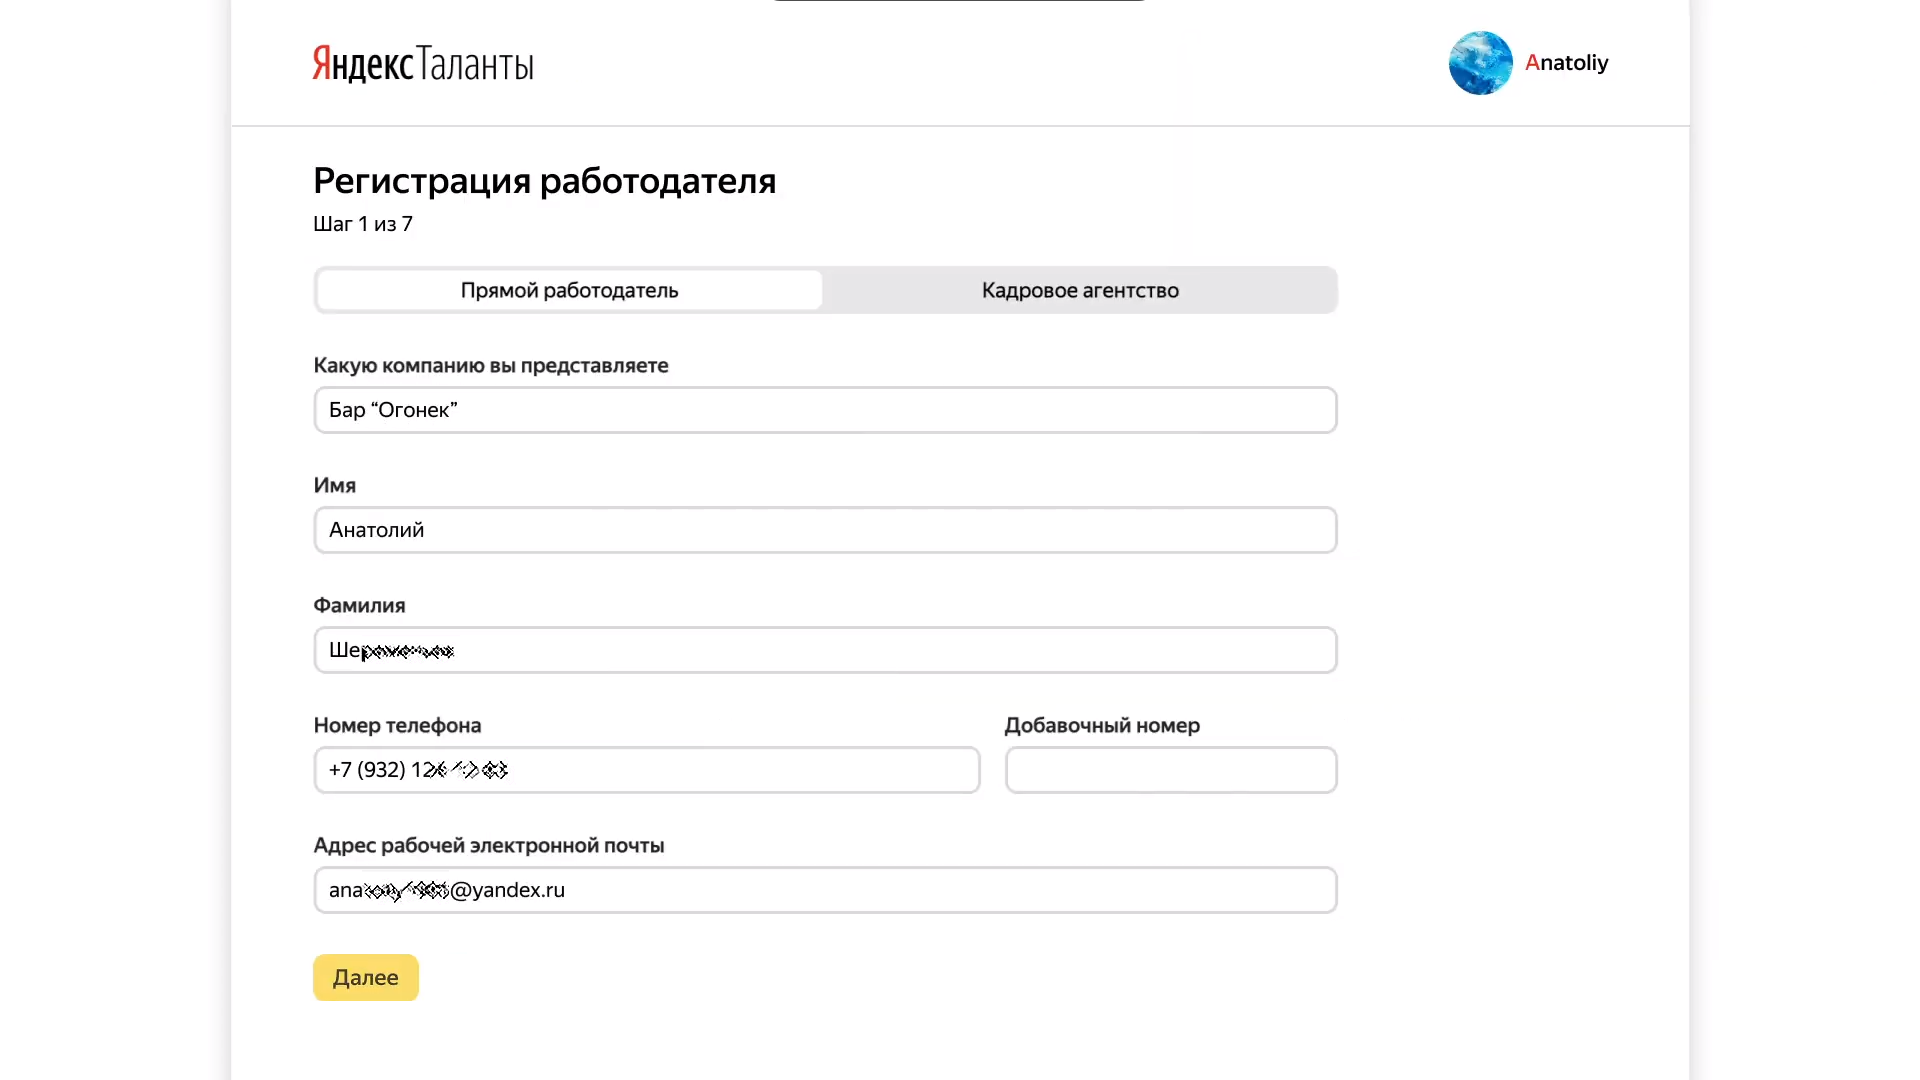 Регистрация работодателя в рекрутинговом онлайн-сервисе Яндекс.Таланты